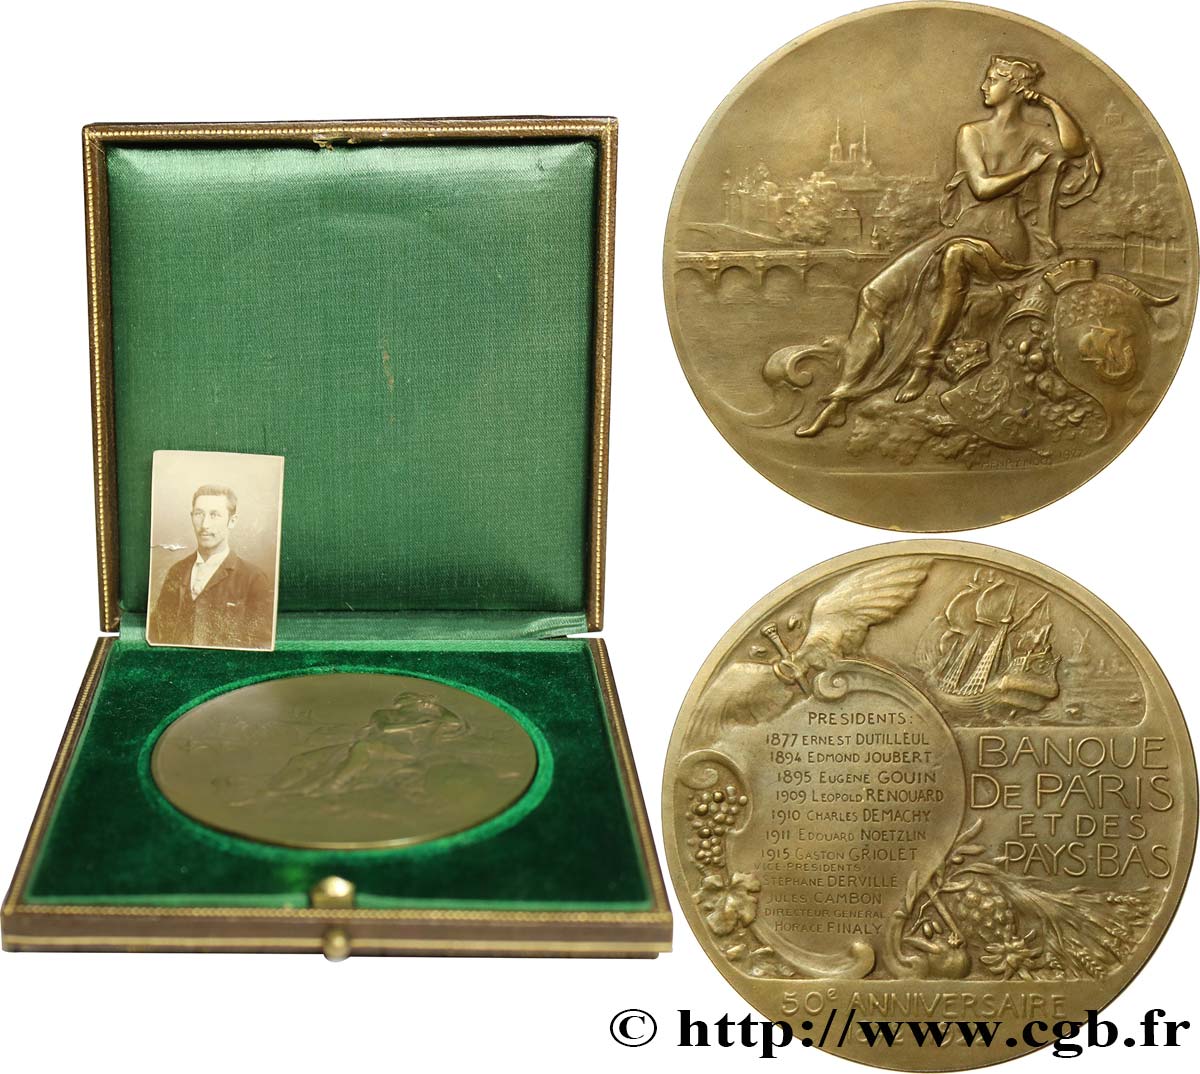 DRITTE FRANZOSISCHE REPUBLIK Médaille, Banque de Paris et des Pays-Bas, 50e anniversaire fVZ